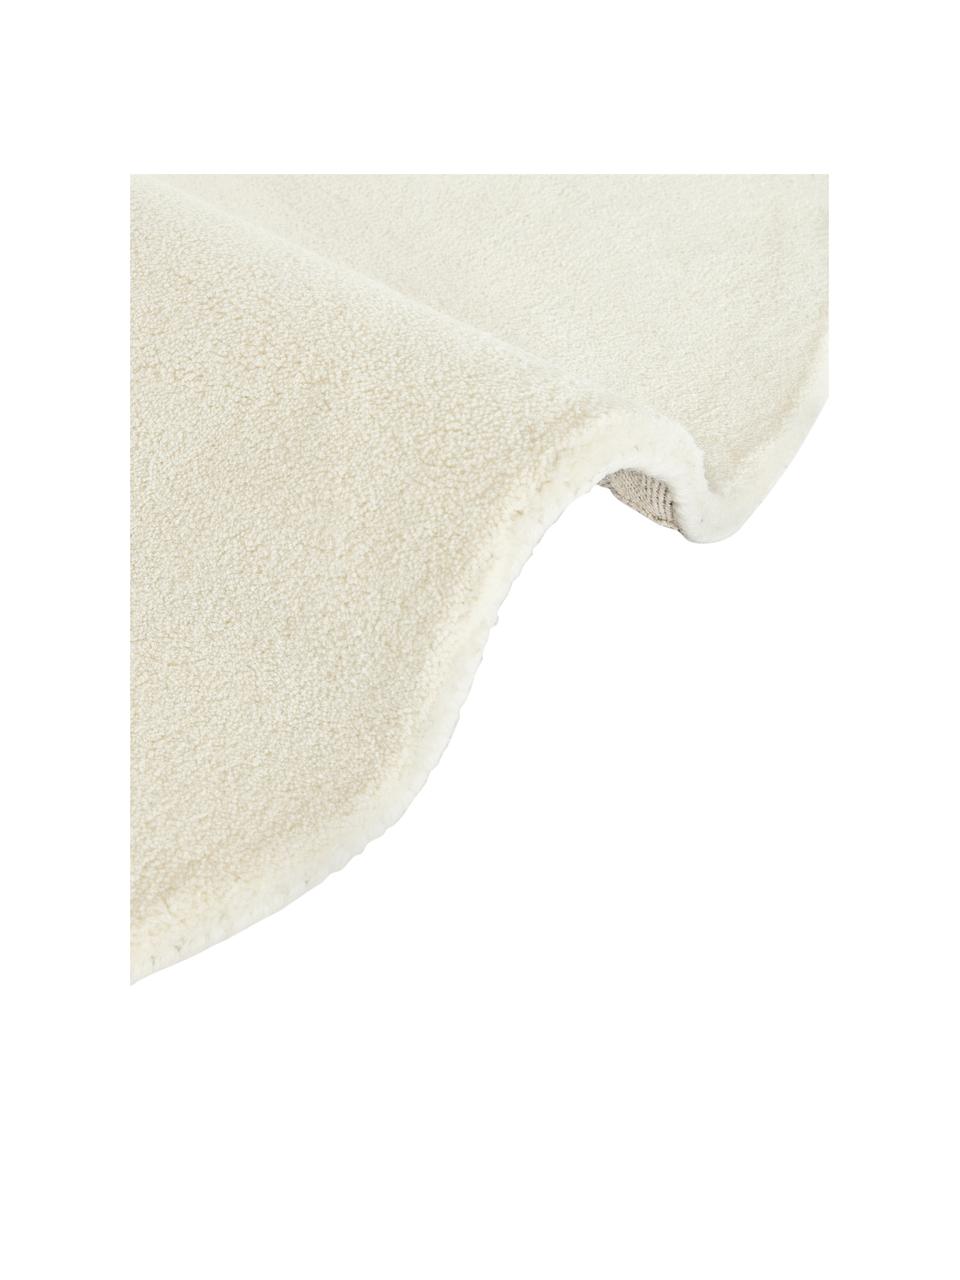 Tappeto rotondo in lana a pelo corto taftato a mano Jadie, Retro: 70% cotone, 30% poliester, Bianco crema, Ø 150 cm (taglia M)